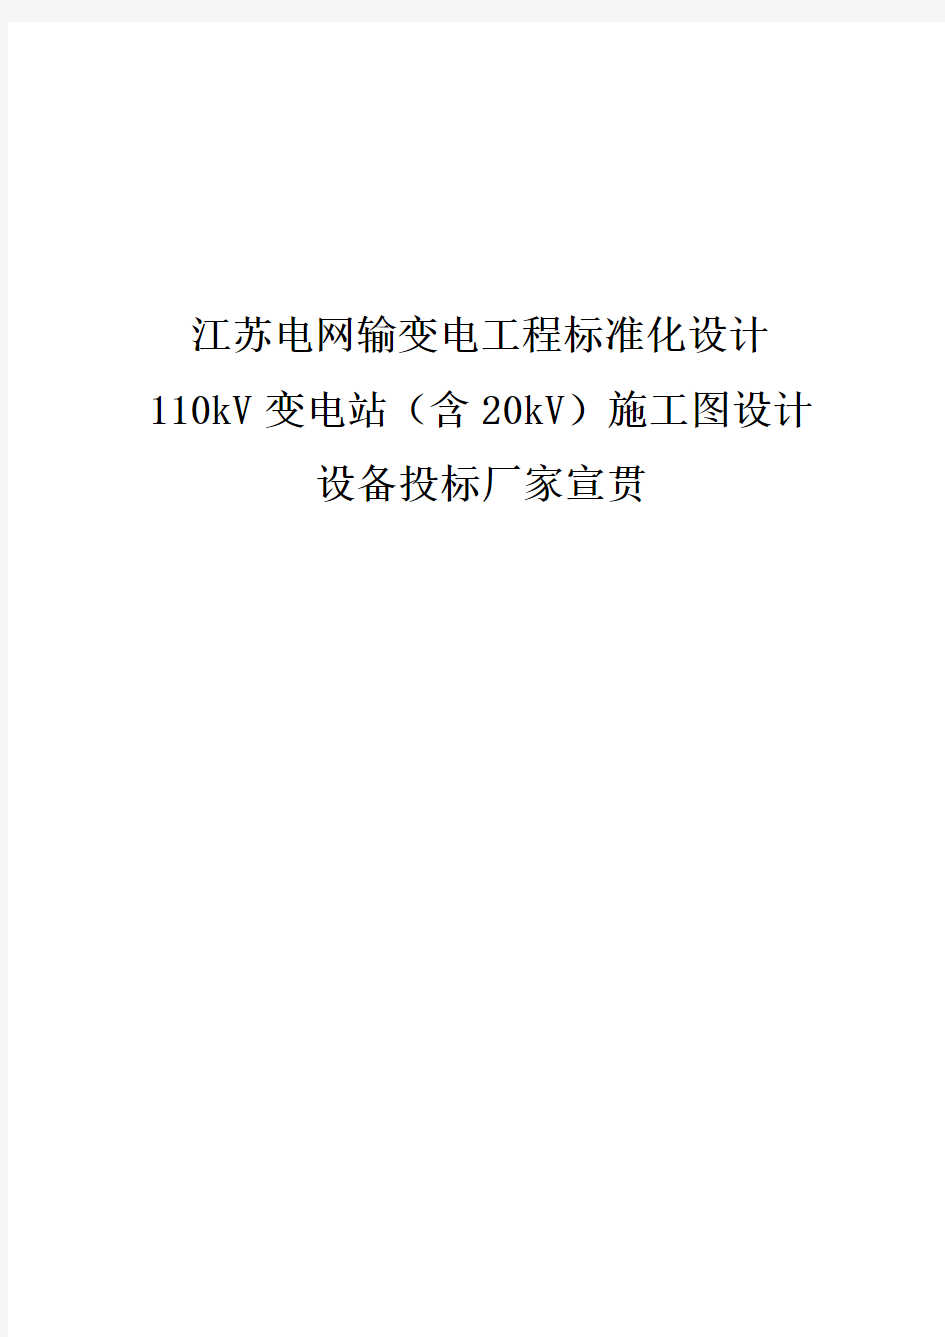 江苏省110变电站(含20kV)通用设计施工图标准化设计宣贯